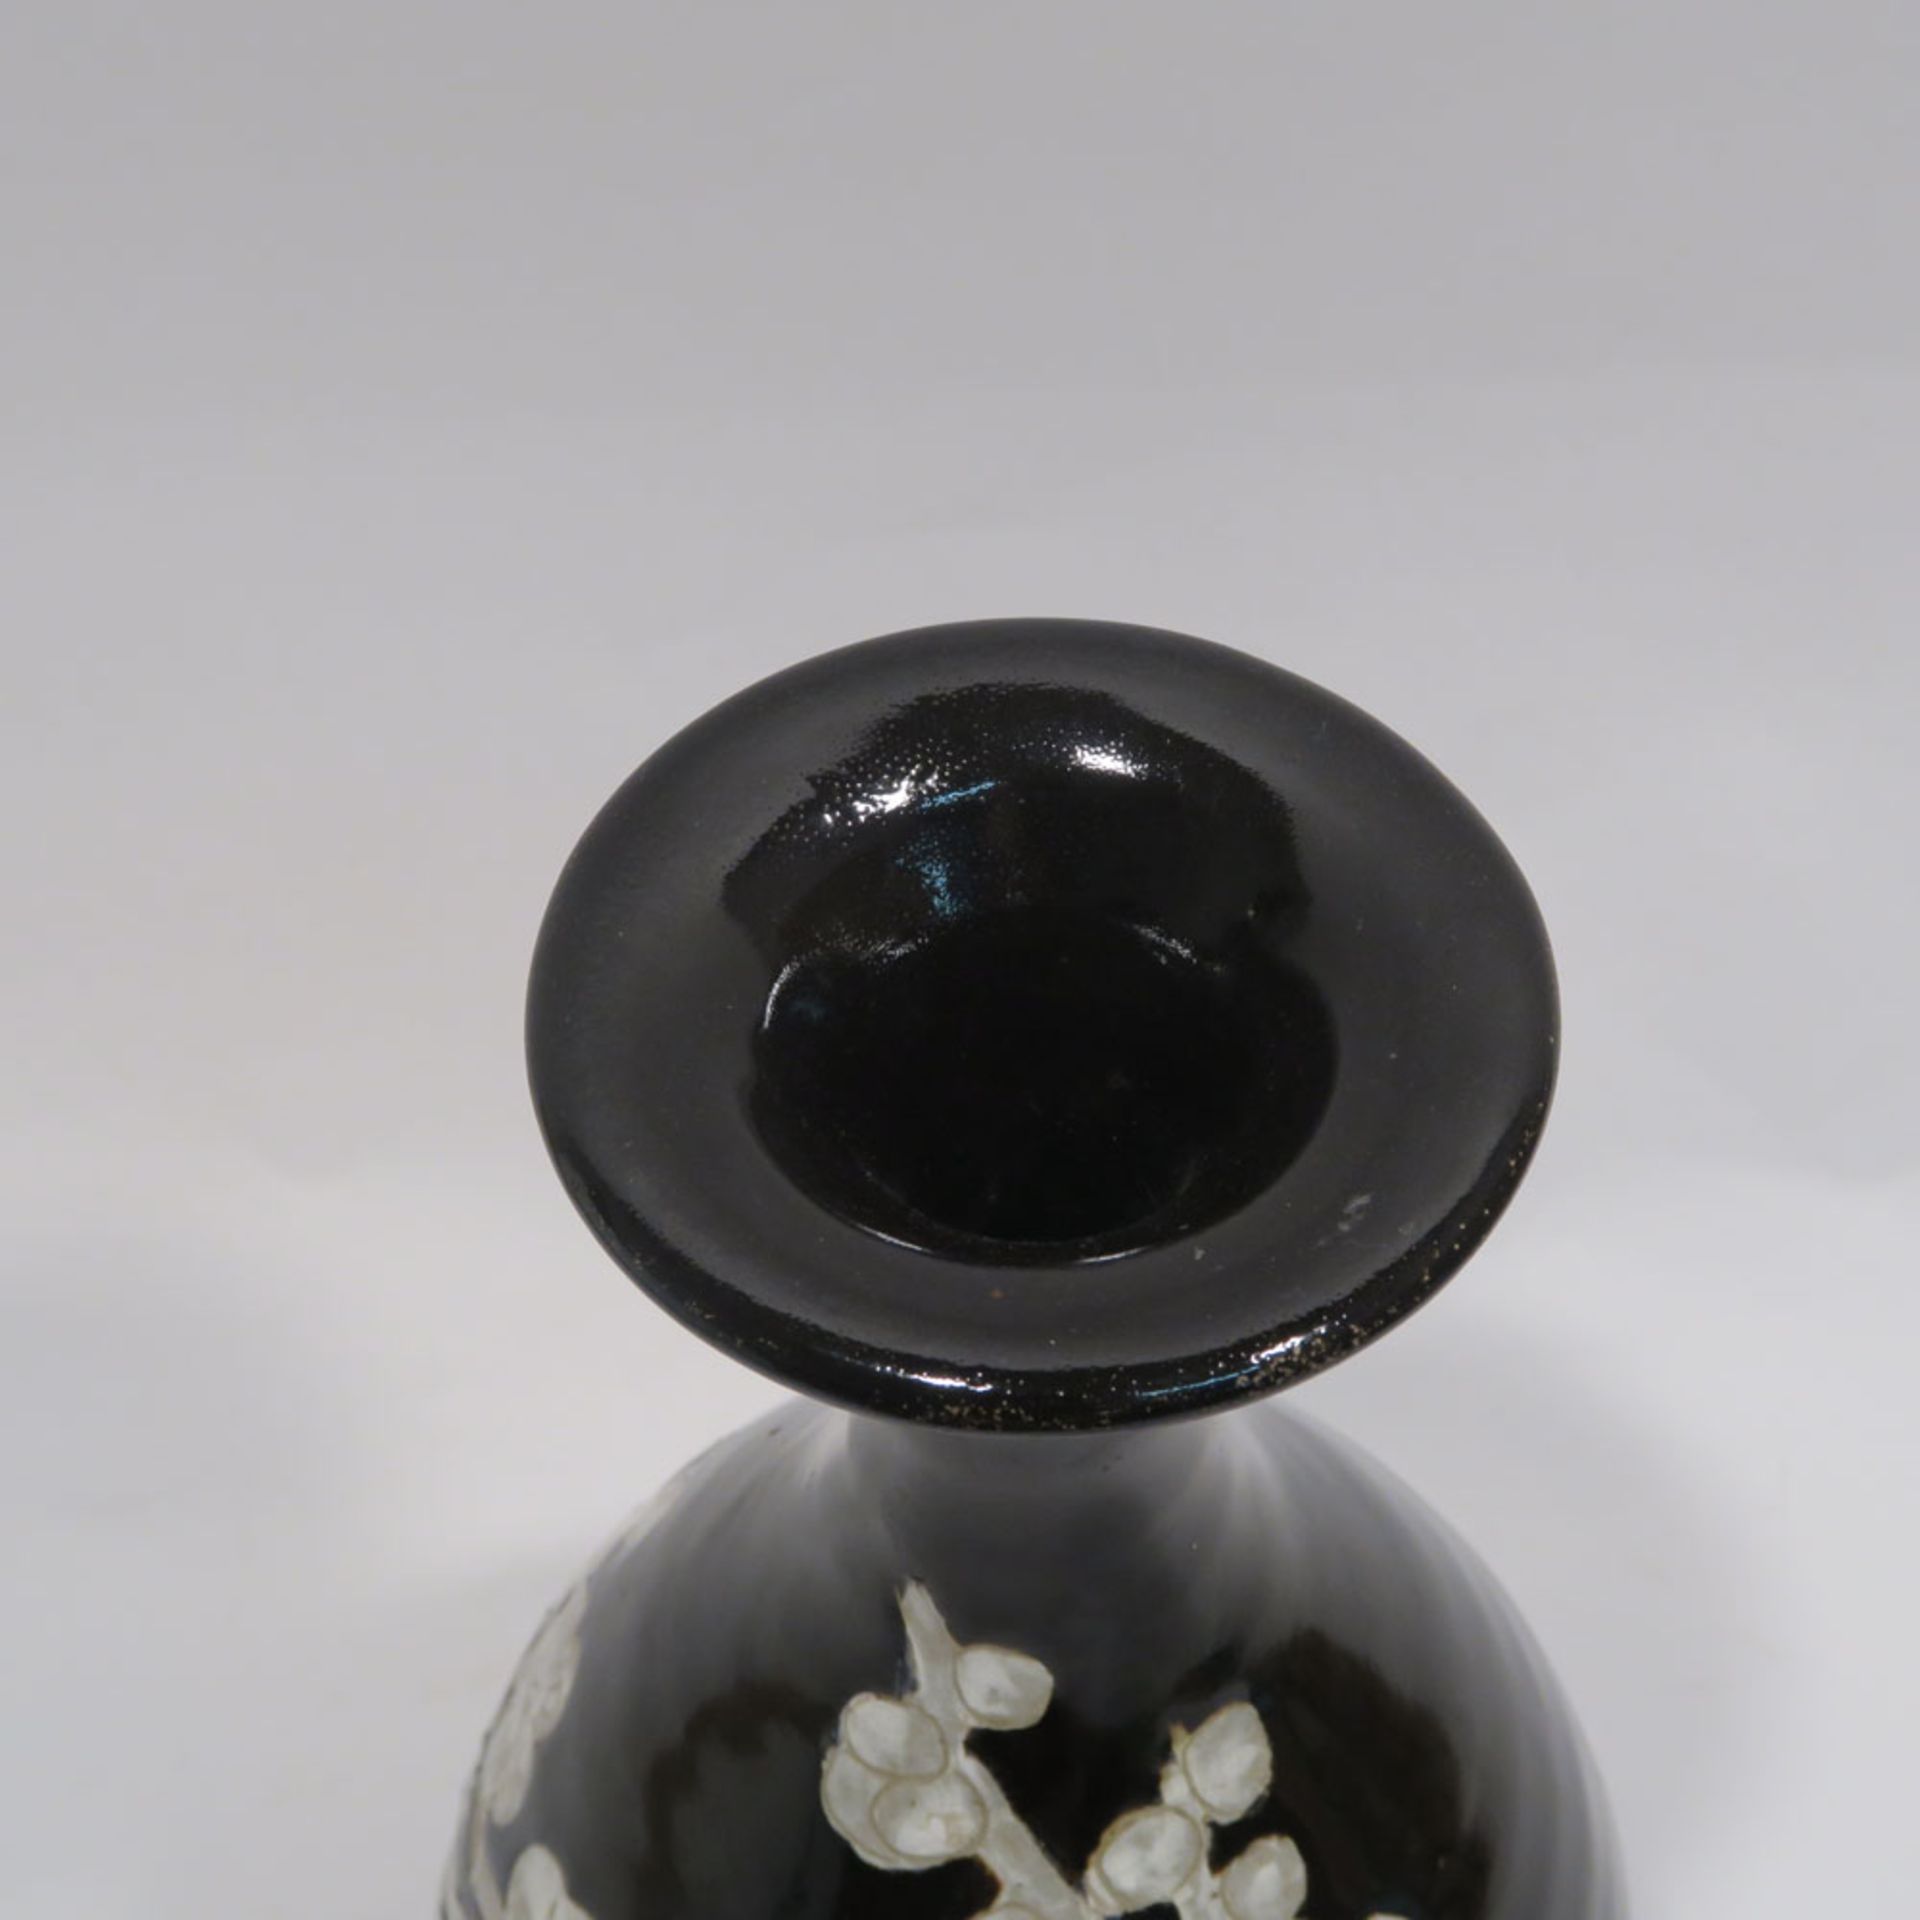 VaseChina, im Stil der Ming-Zeit. Steinzeug in der Art der Cizhou-Keramiken. Birnform mit - Bild 8 aus 10